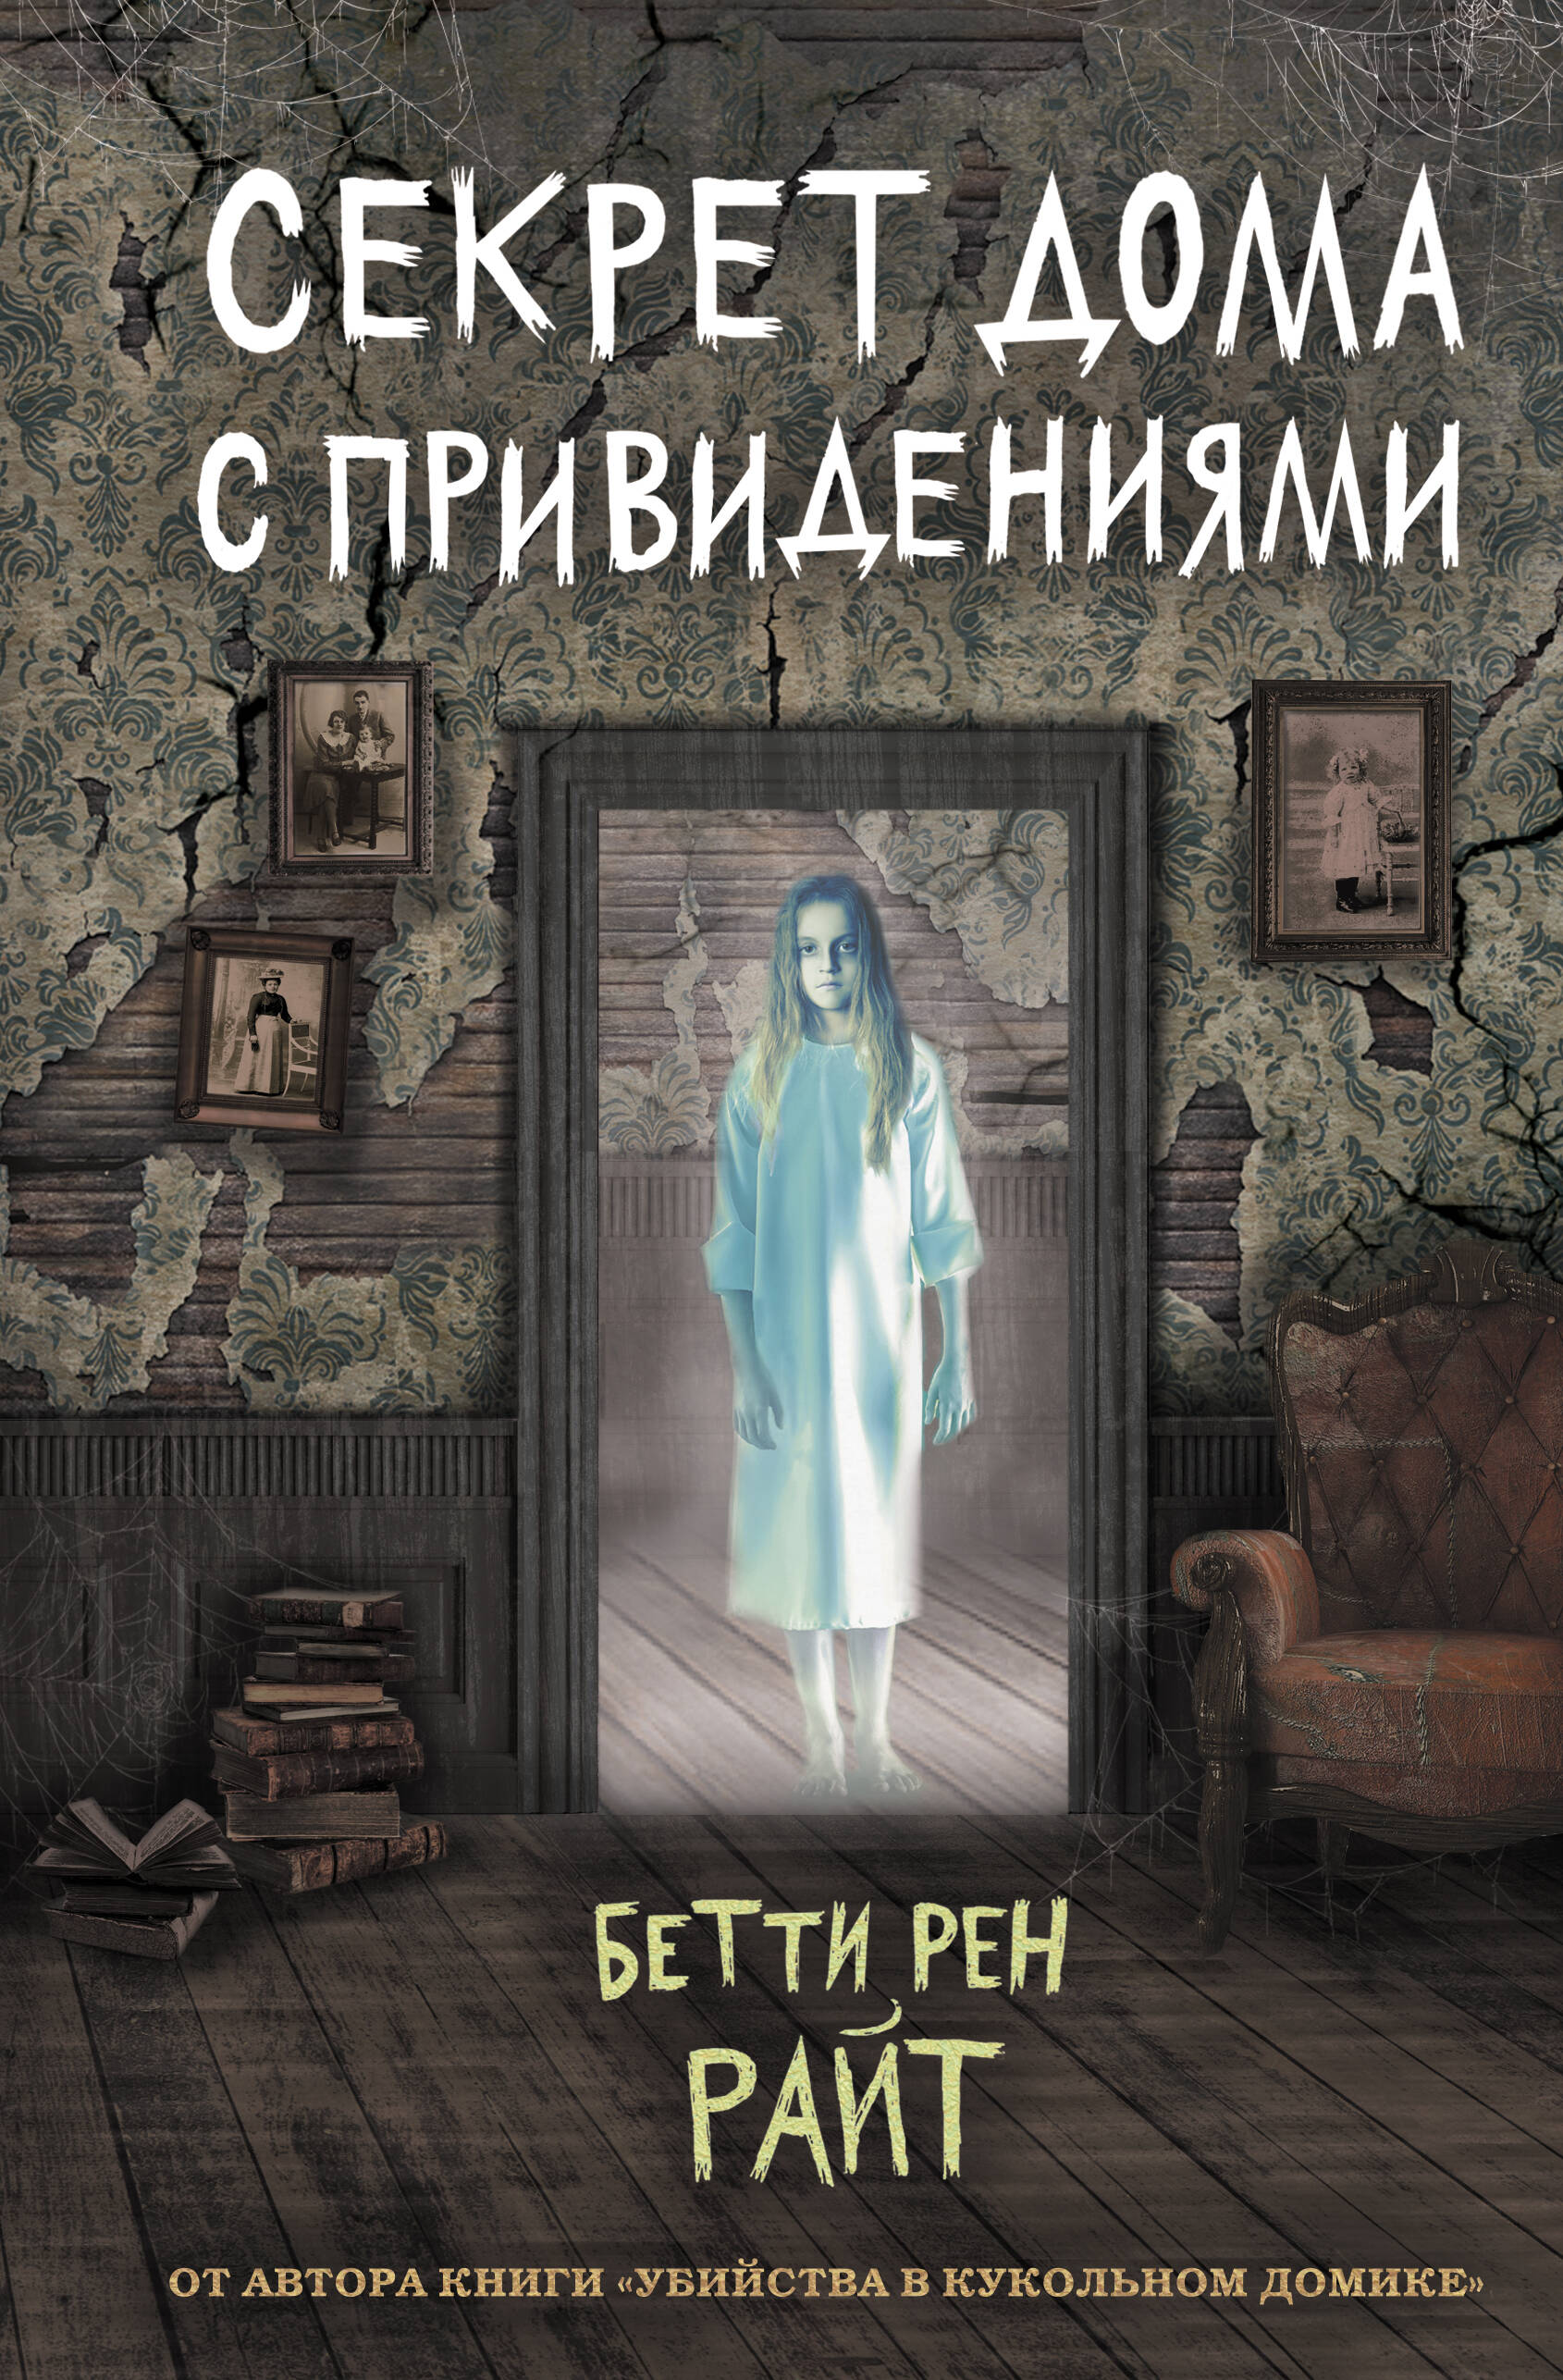 бетти райт секрет дома с привидениями выпуск 4 Секрет дома с привидениями